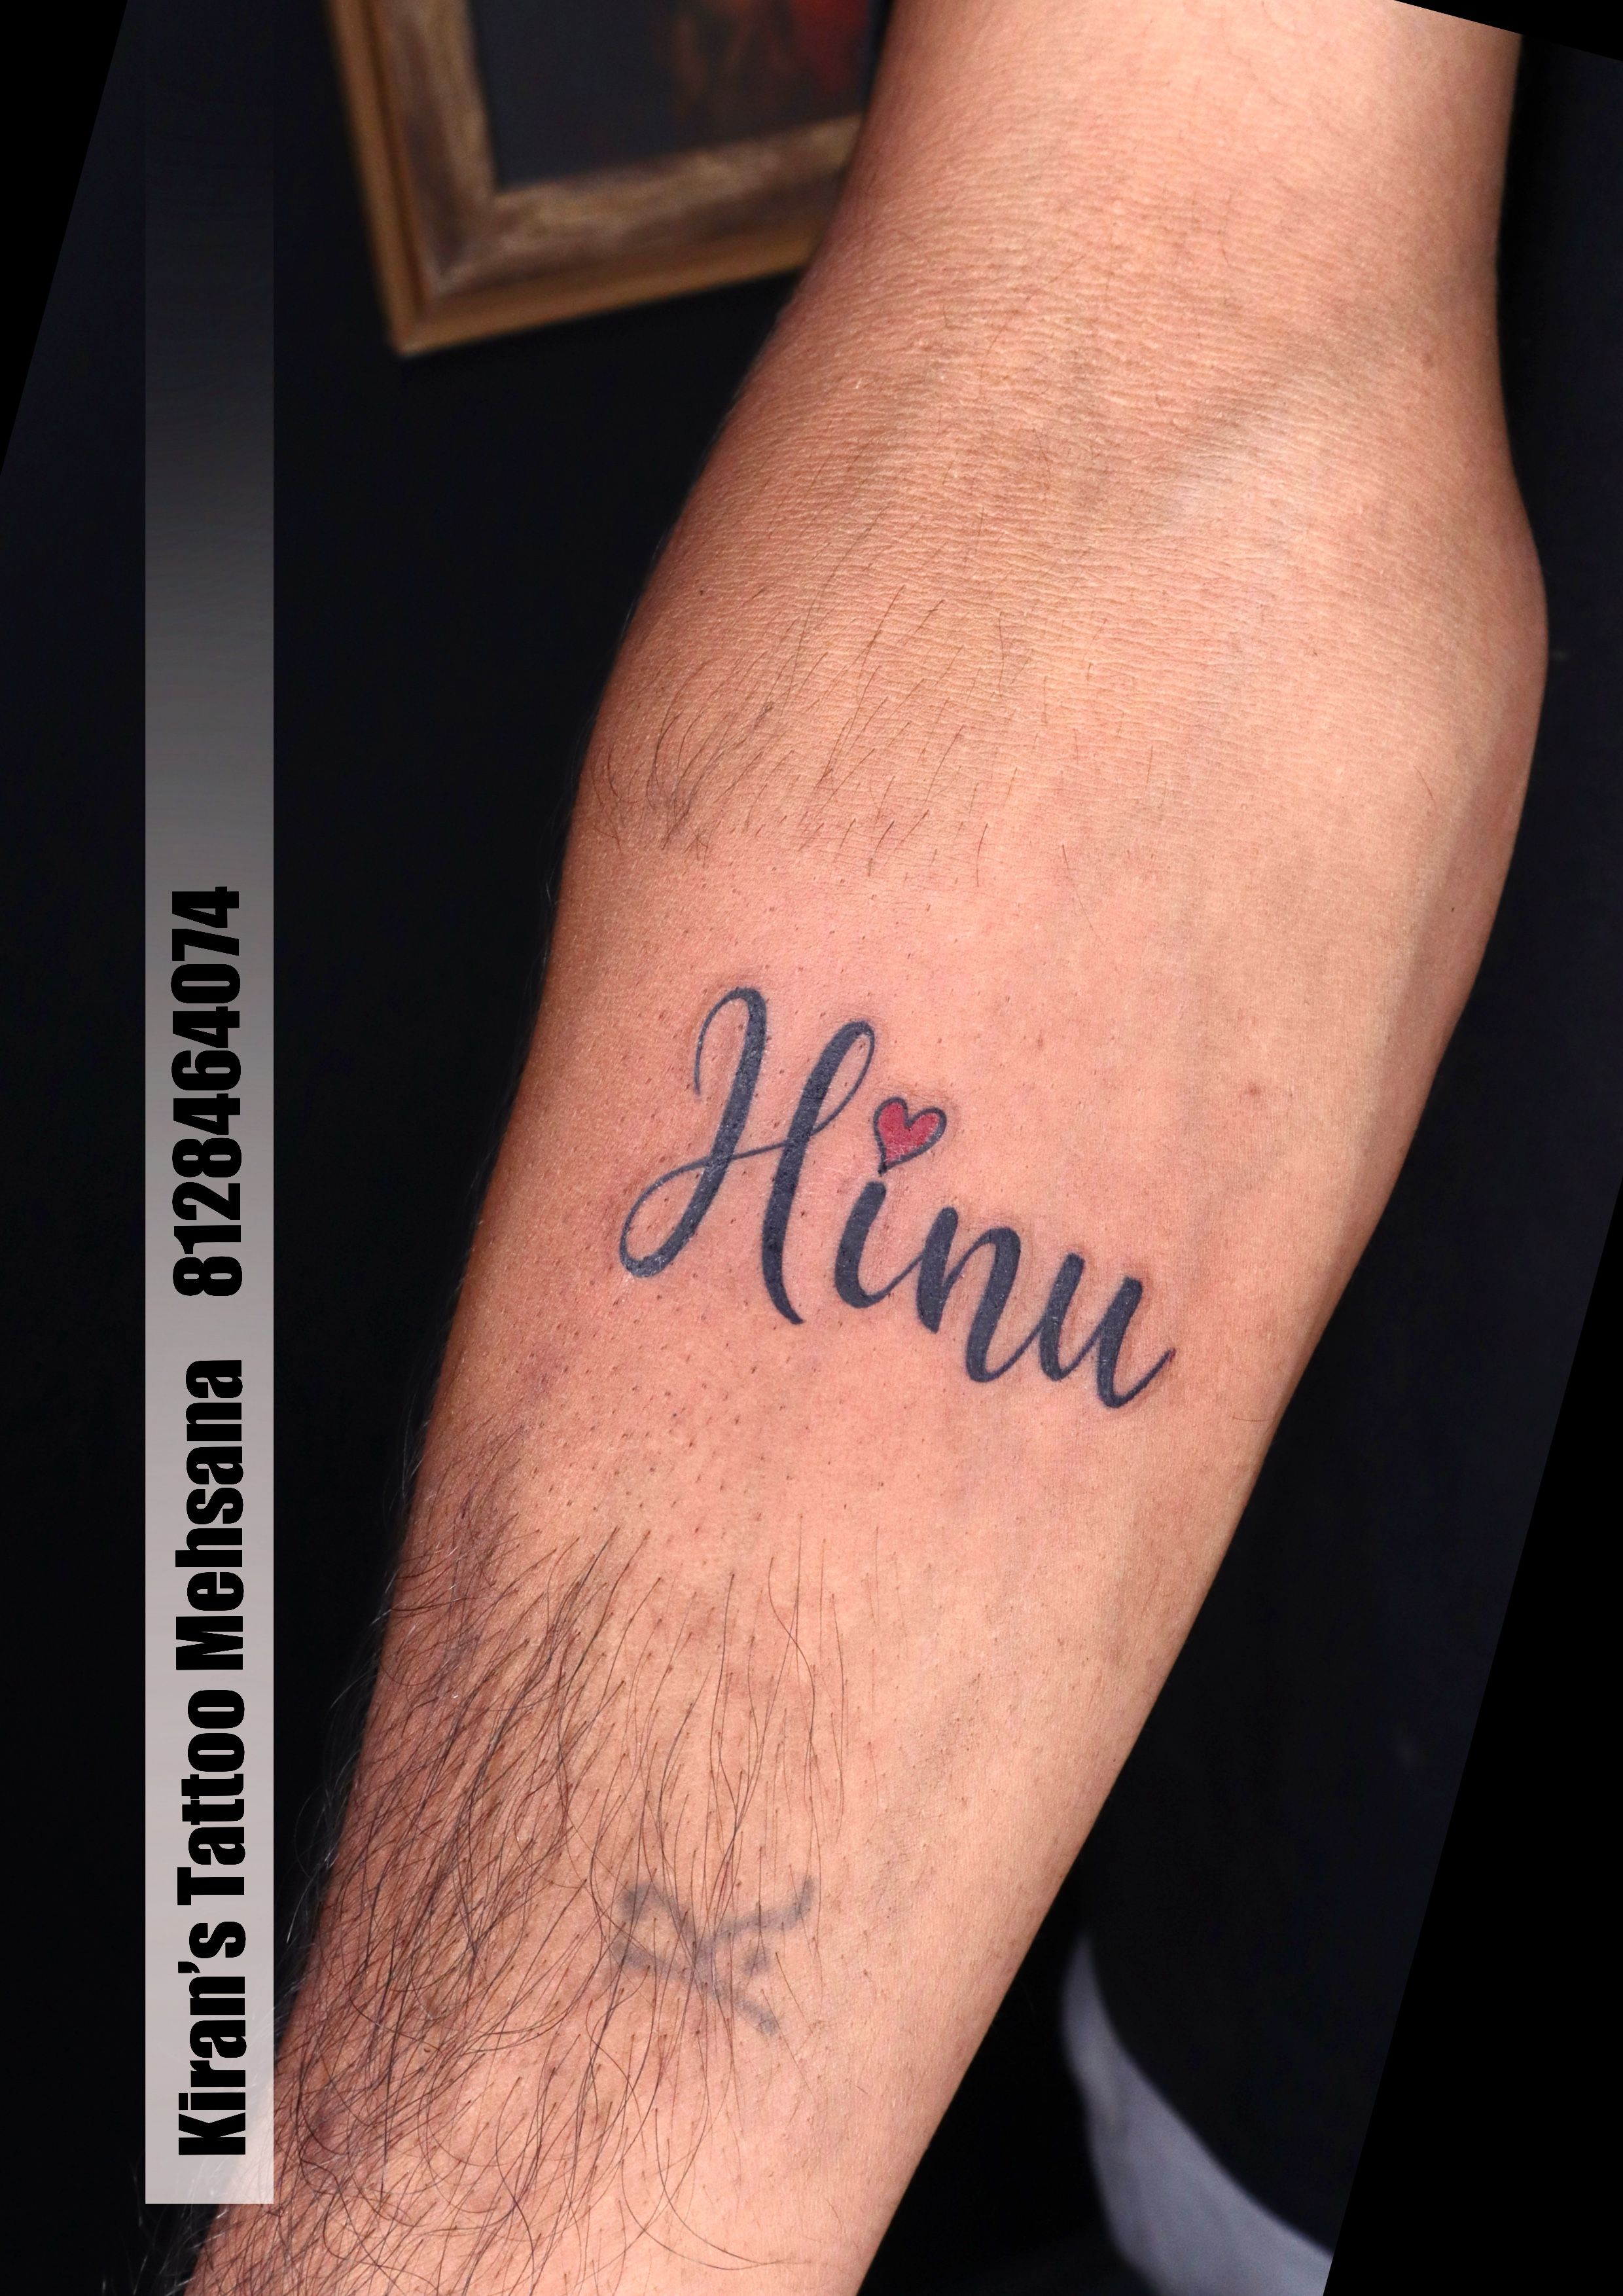 Harshu tattoo | Tattoo work | jay gosar | Flickr